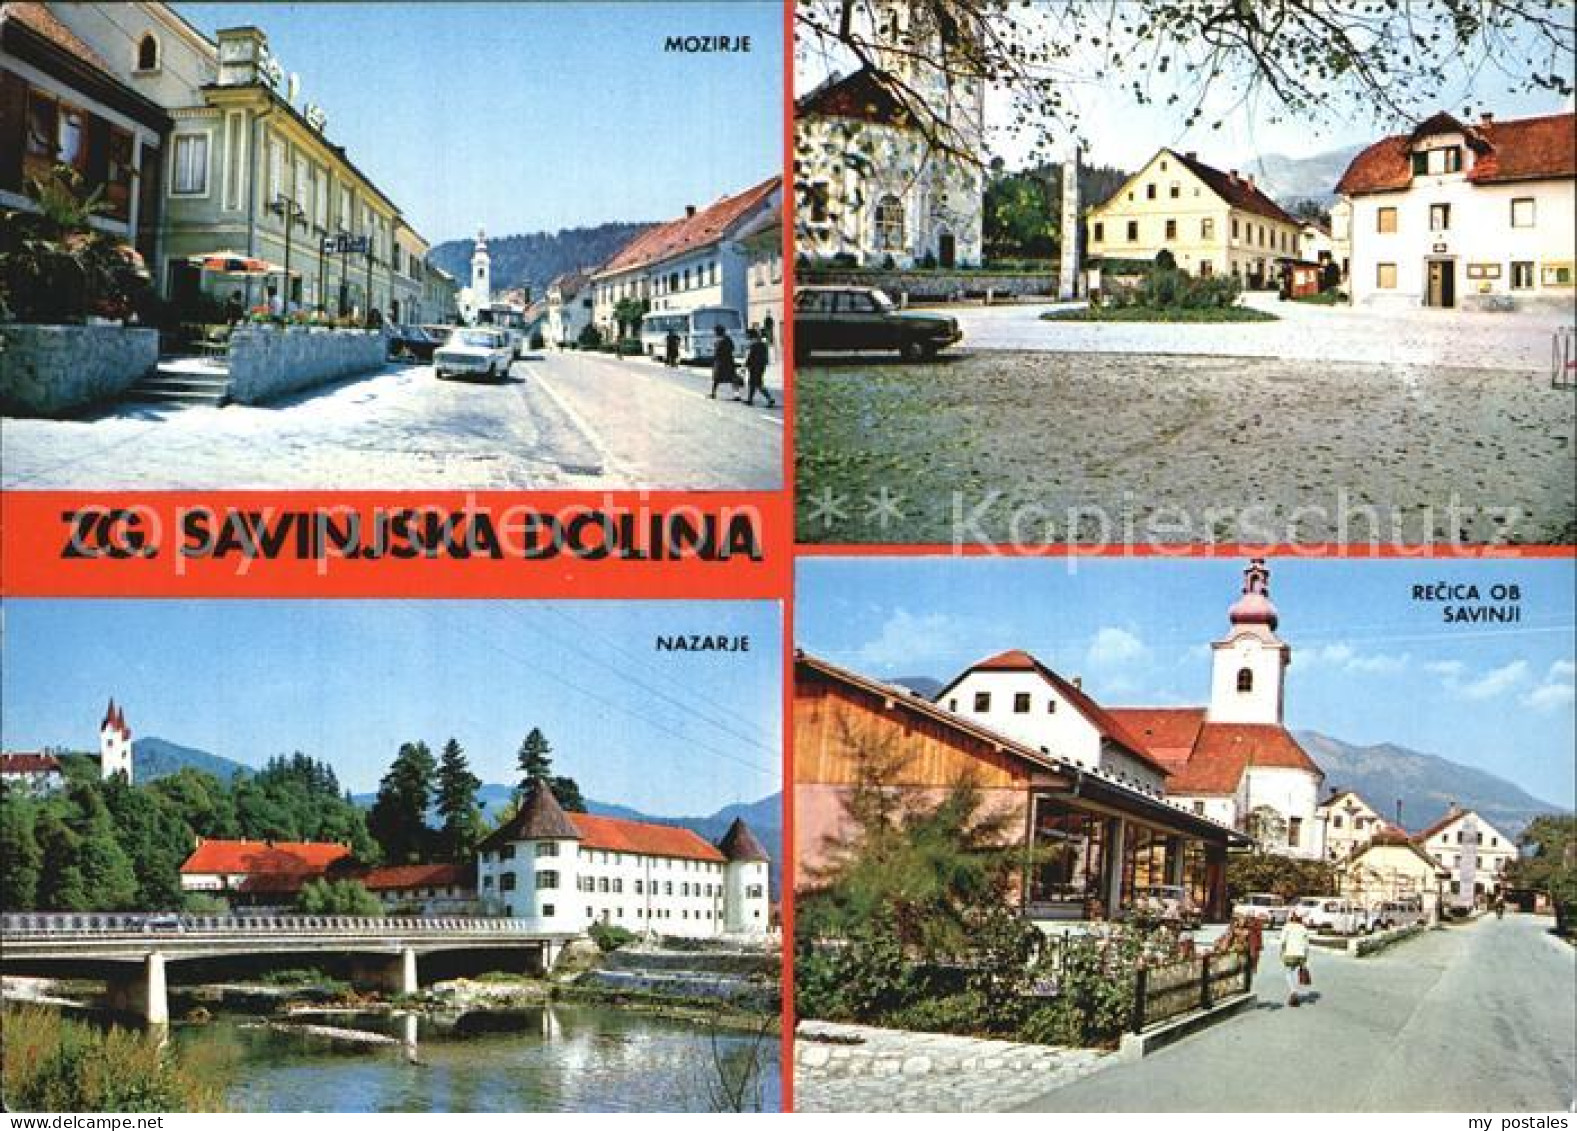 72539702 Dolina Mozirje Nazarje Dolina - Slovenia